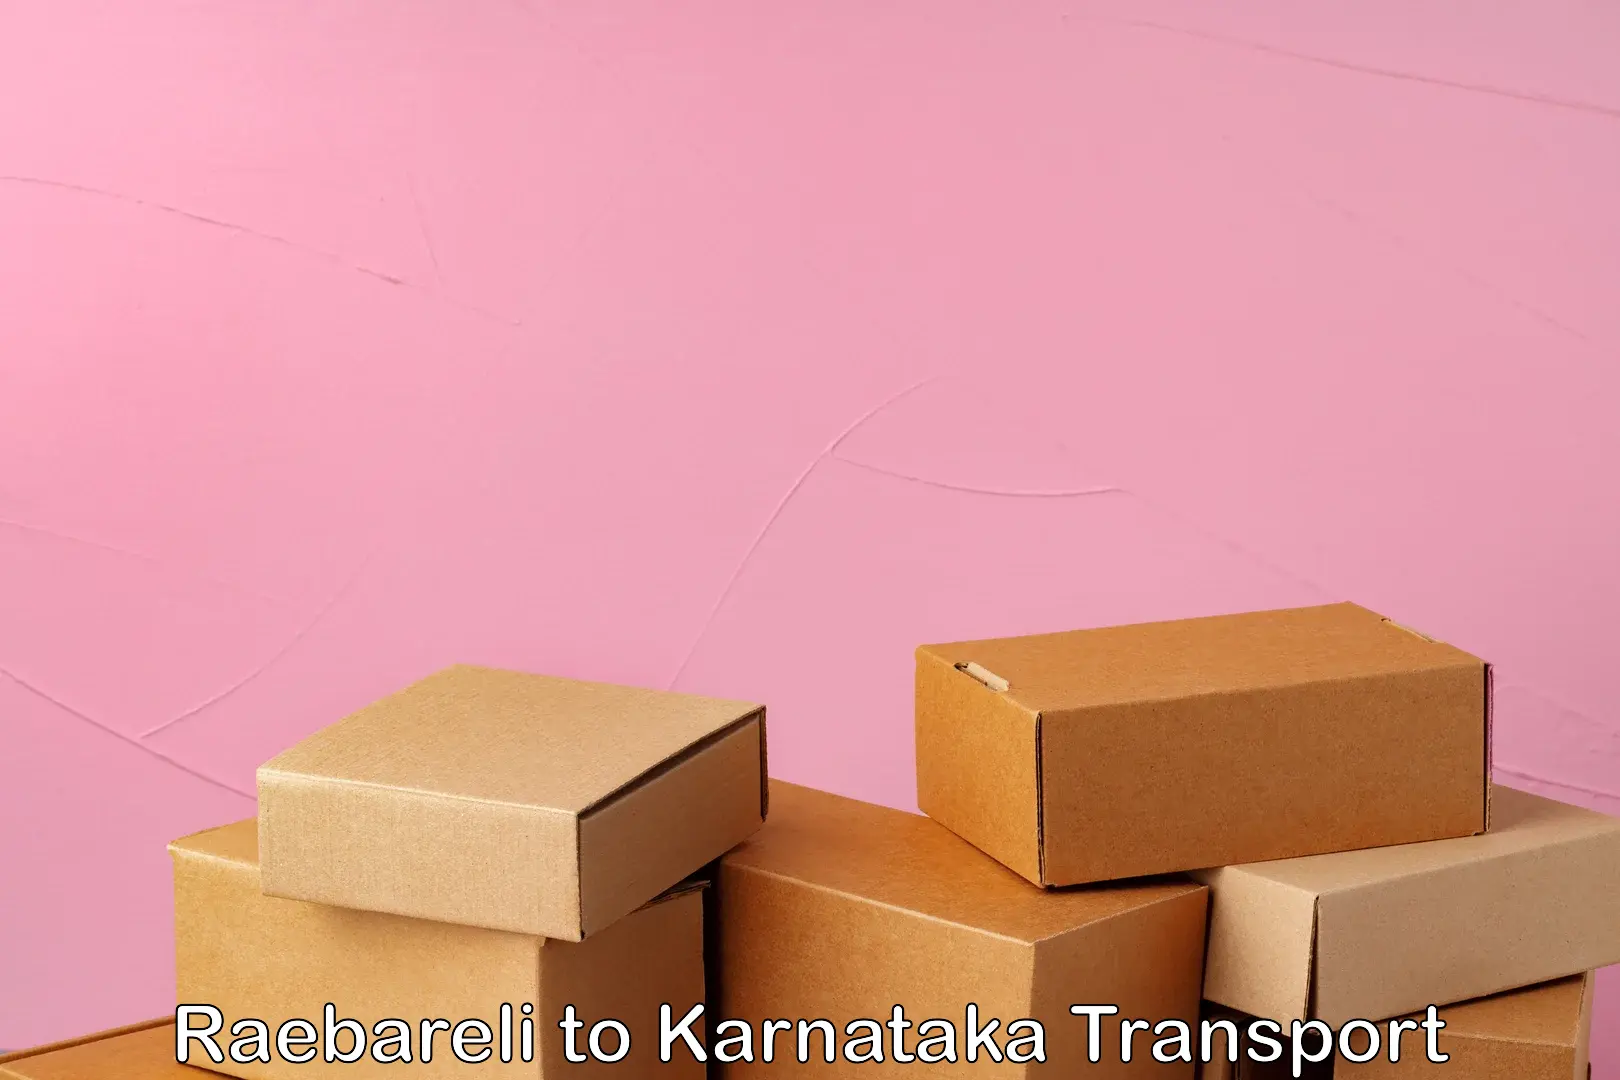 Furniture transport service Raebareli to Karnataka